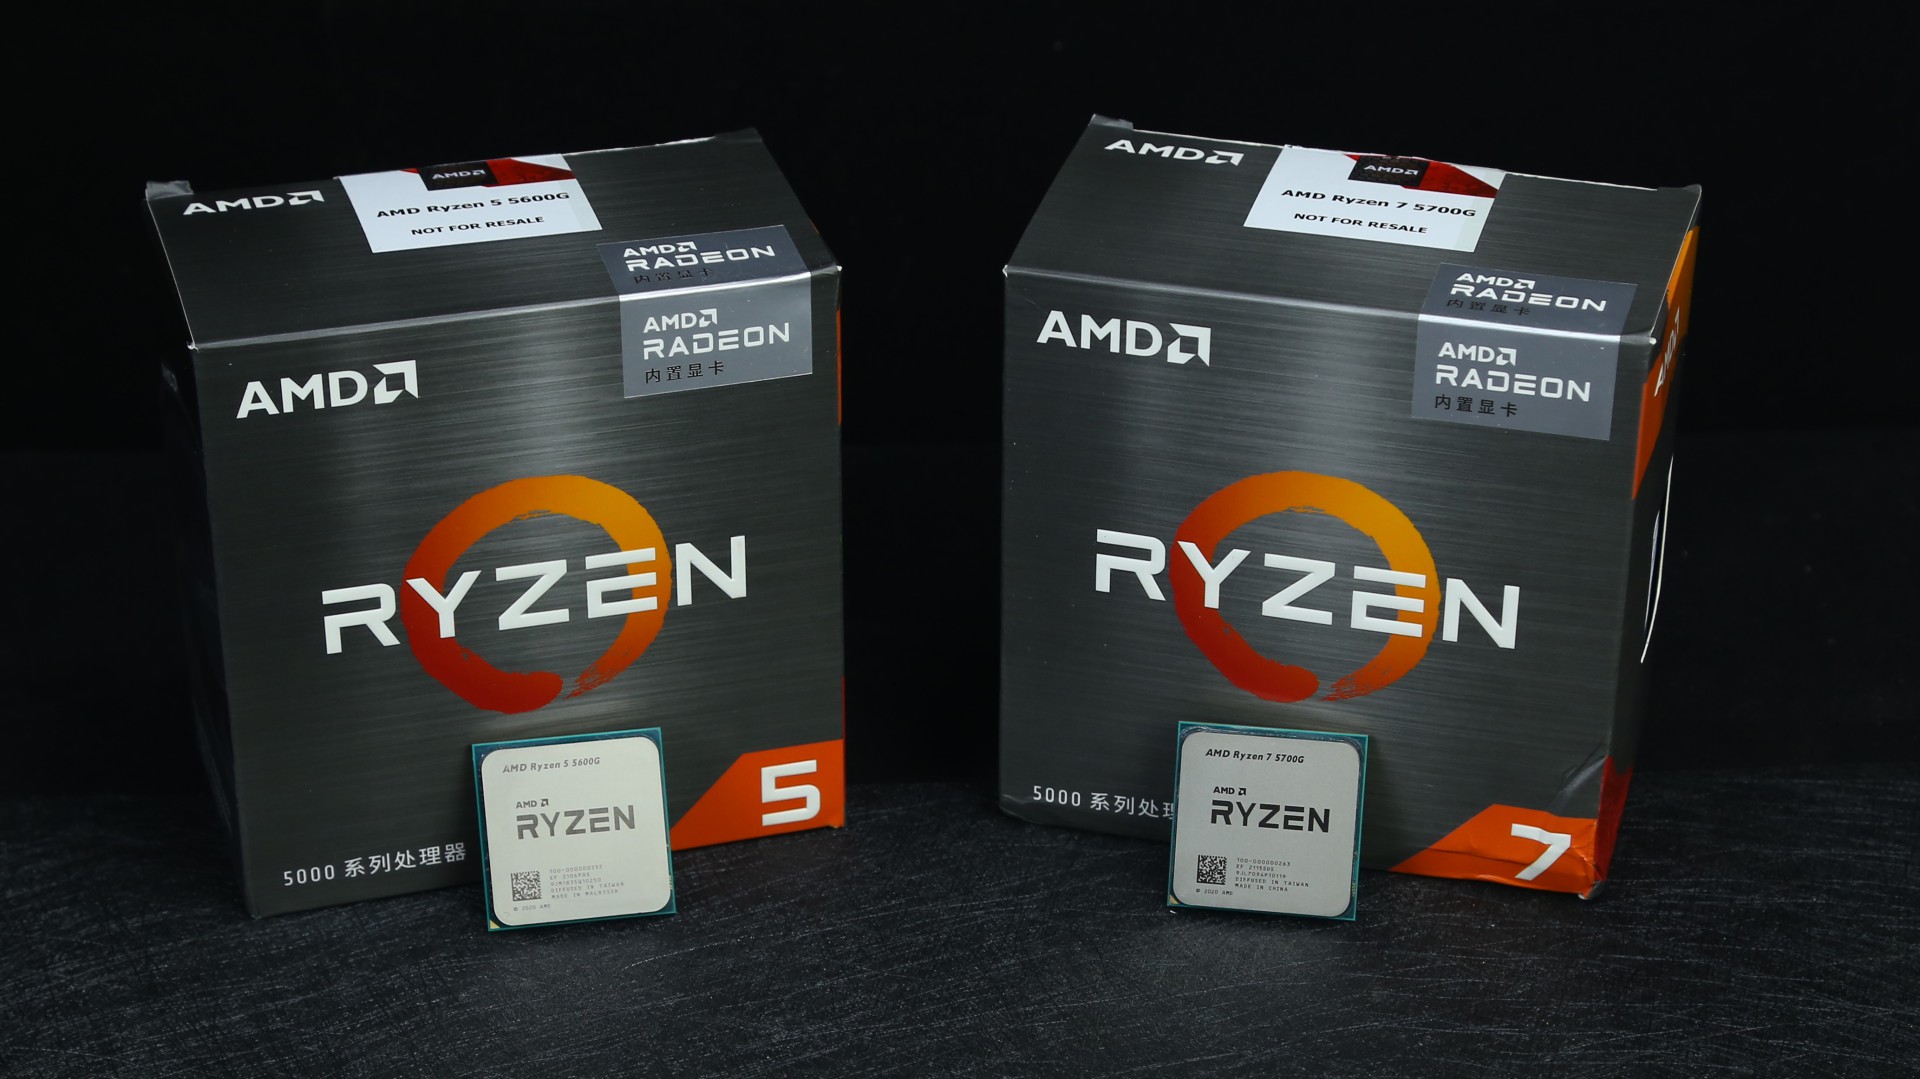 AMD ZEN3 架構5000G系列APU首測 集顯107幀暢玩《惡靈古堡8 村莊》